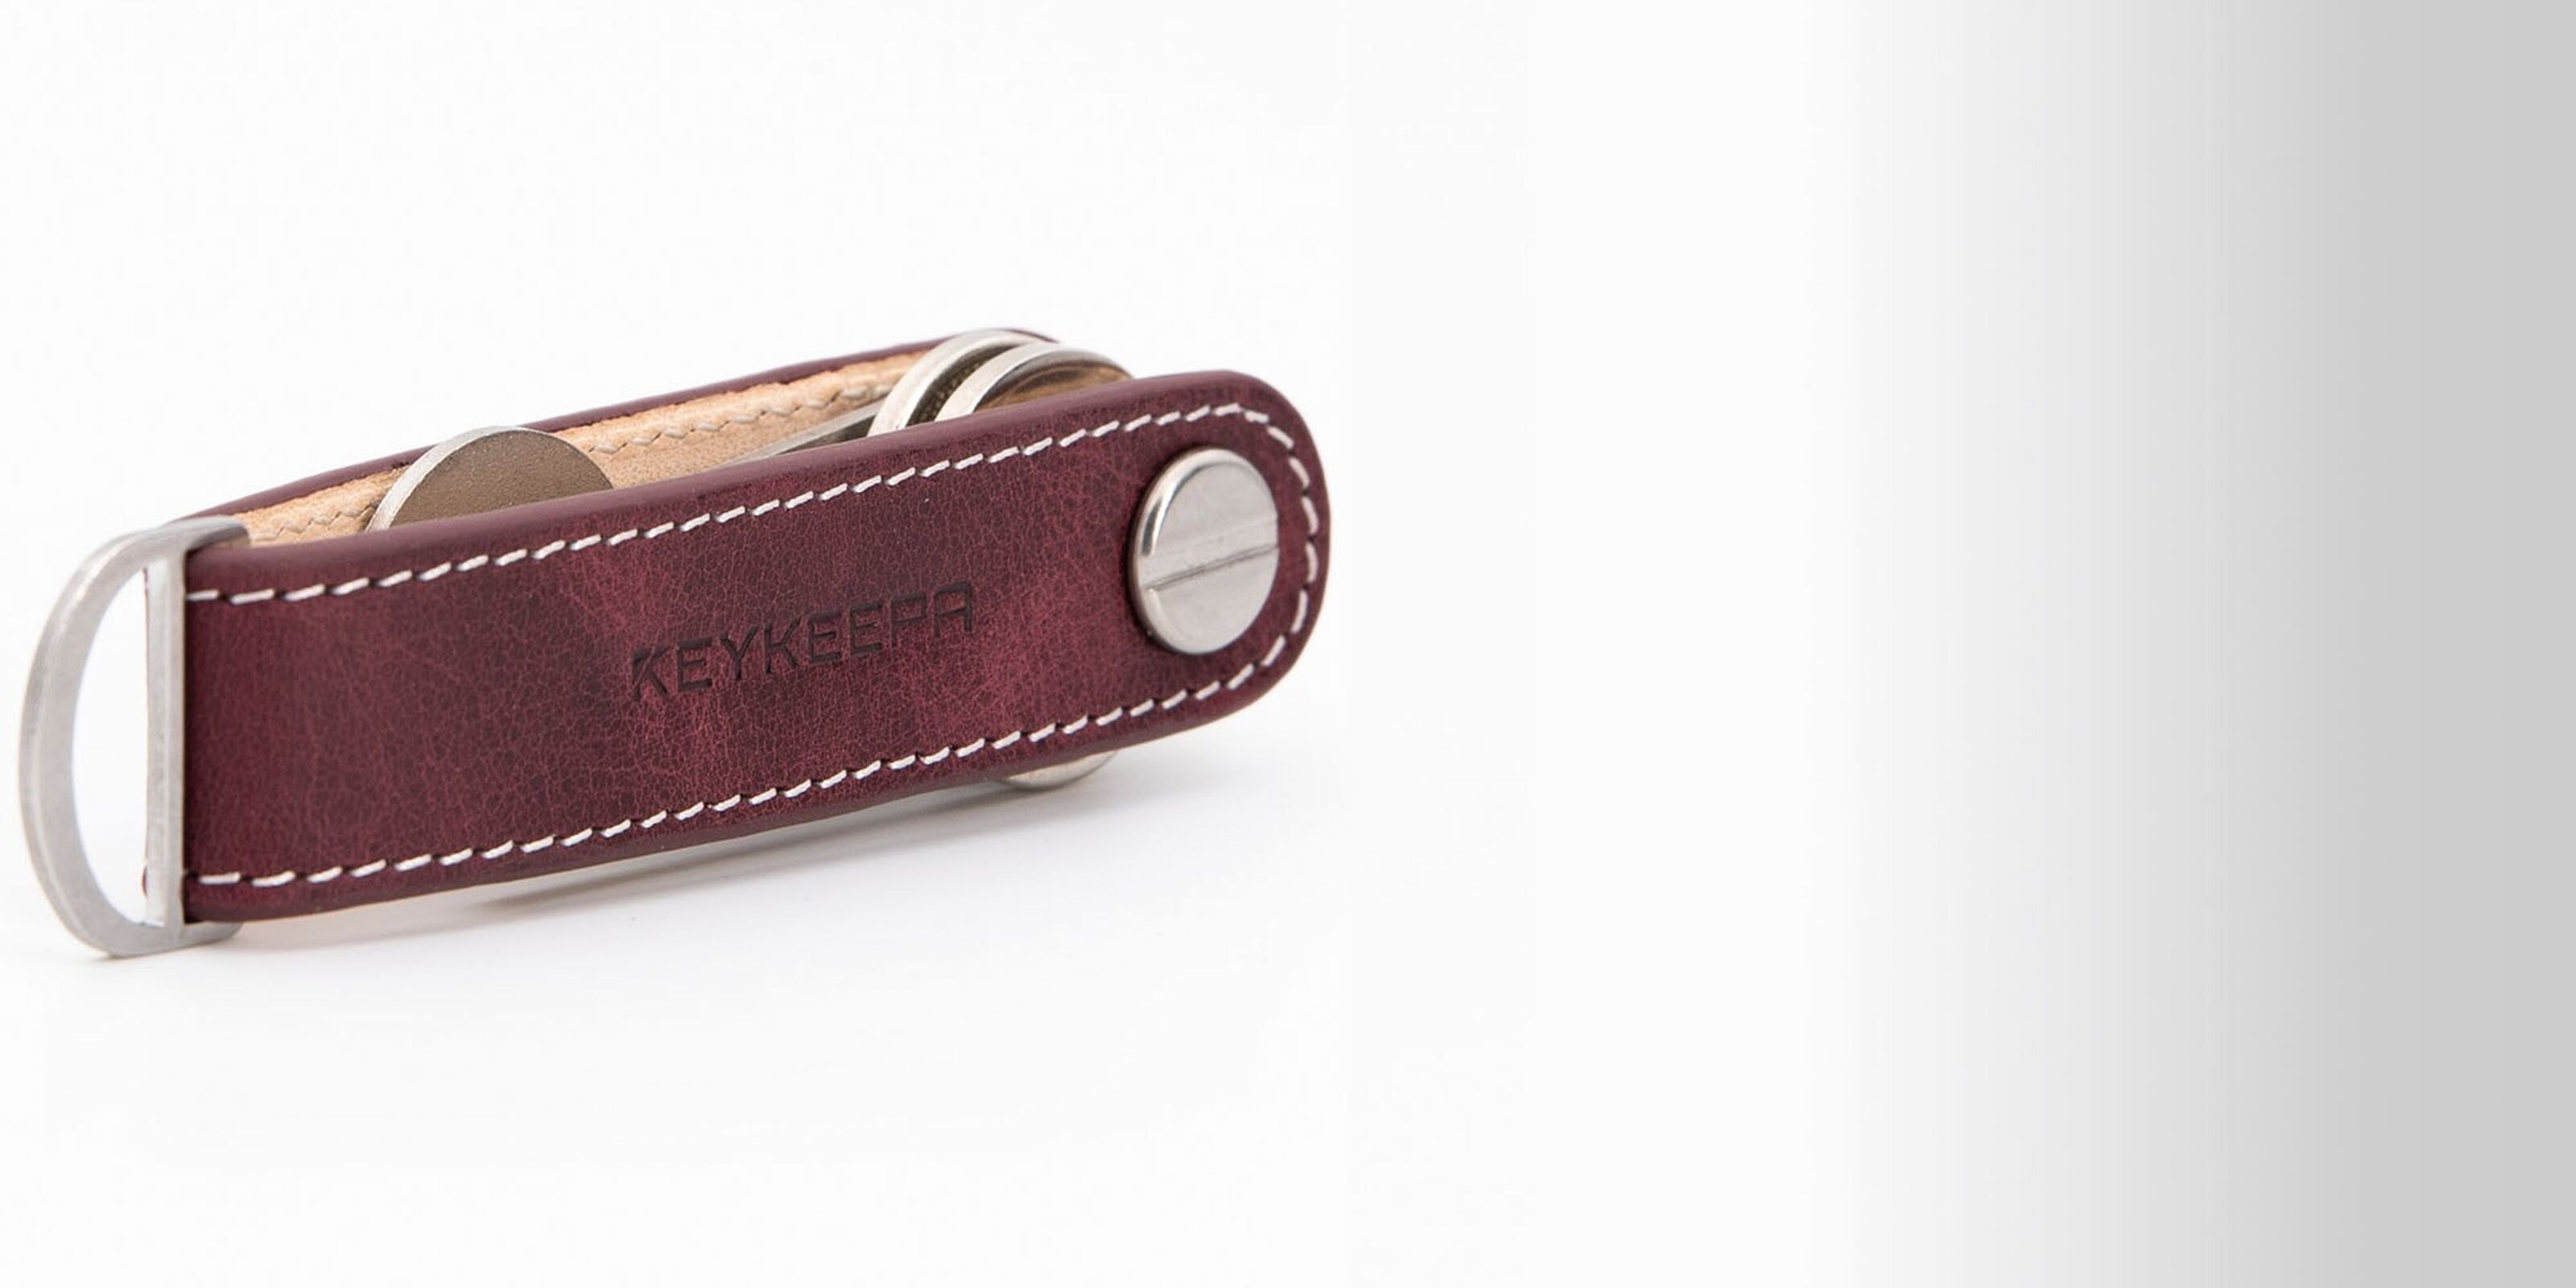 Buy wholesale Key Organizer Leather Loop - Merlot Red